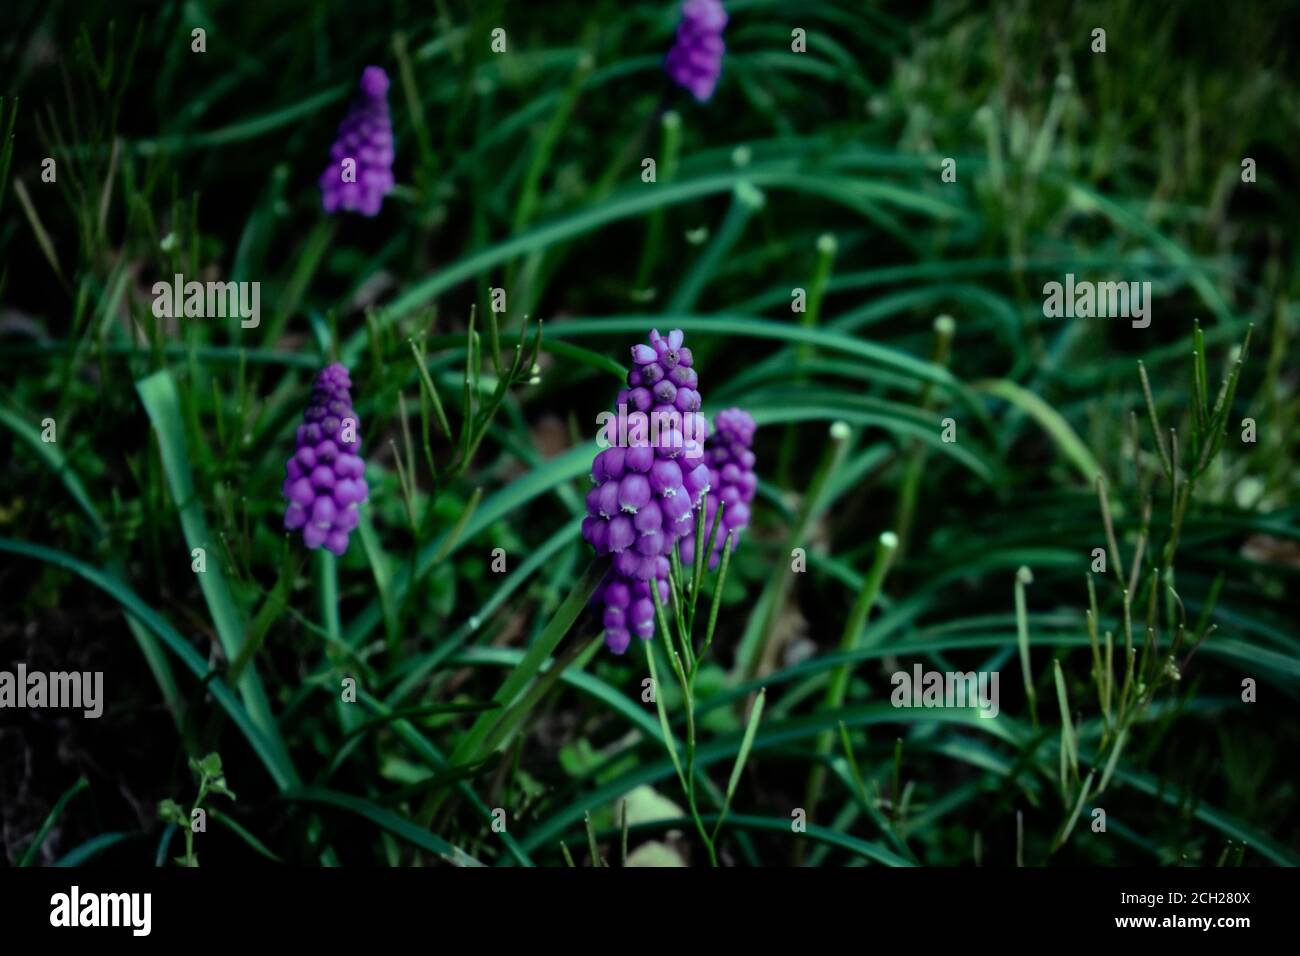 Petites fleurs violettes dans une zone de gazon vert foncé Photo Stock -  Alamy